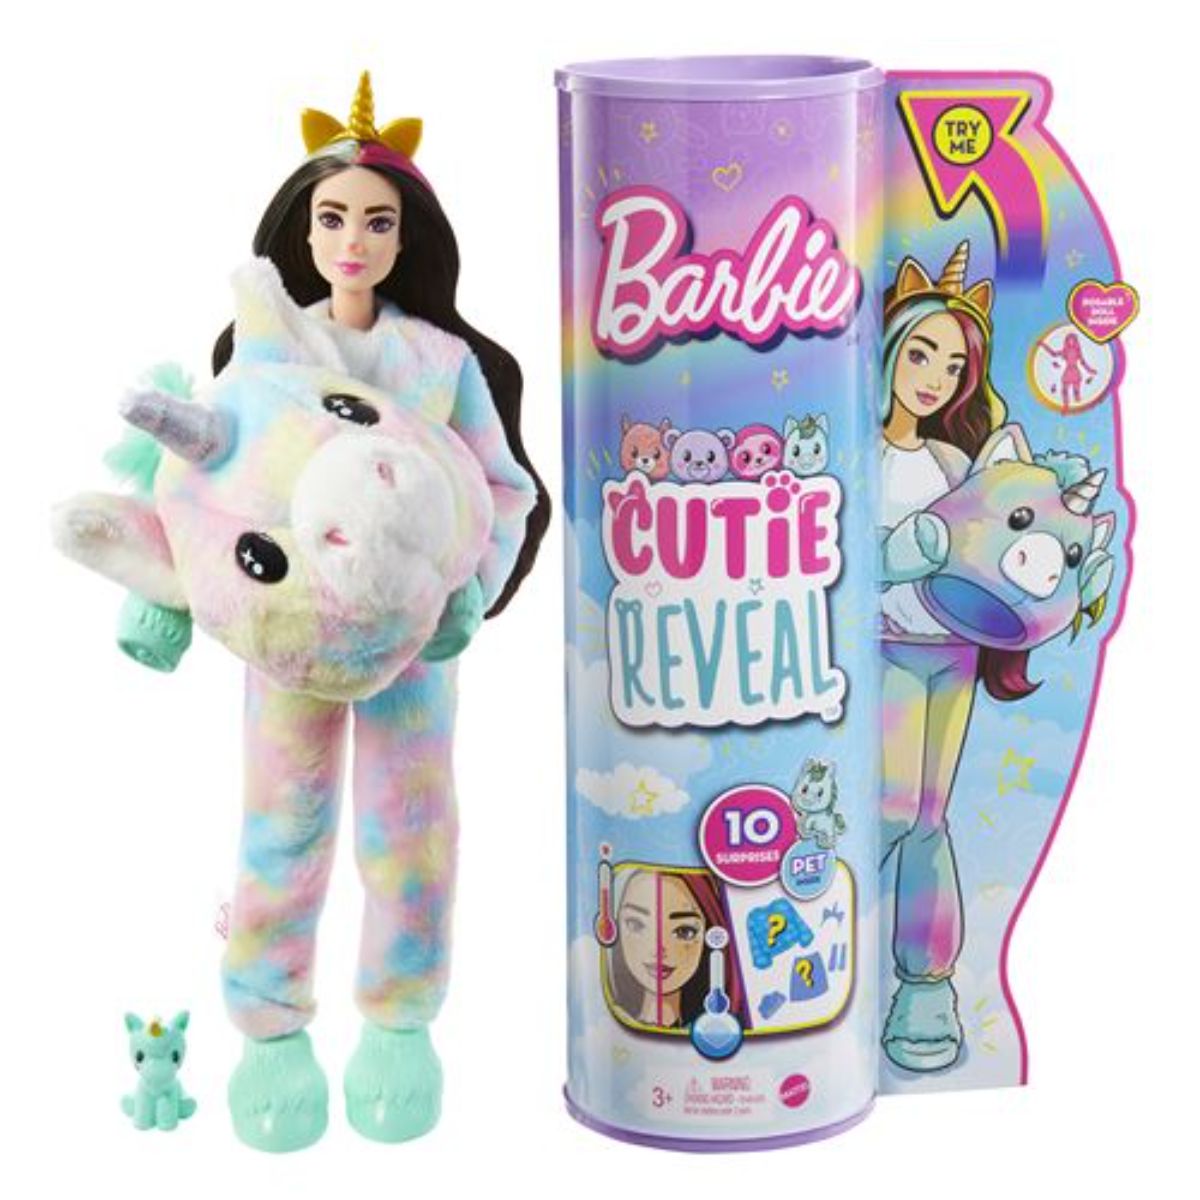 Papusa Barbie Cutie Reveal, Unicorn, cu 10 surprize